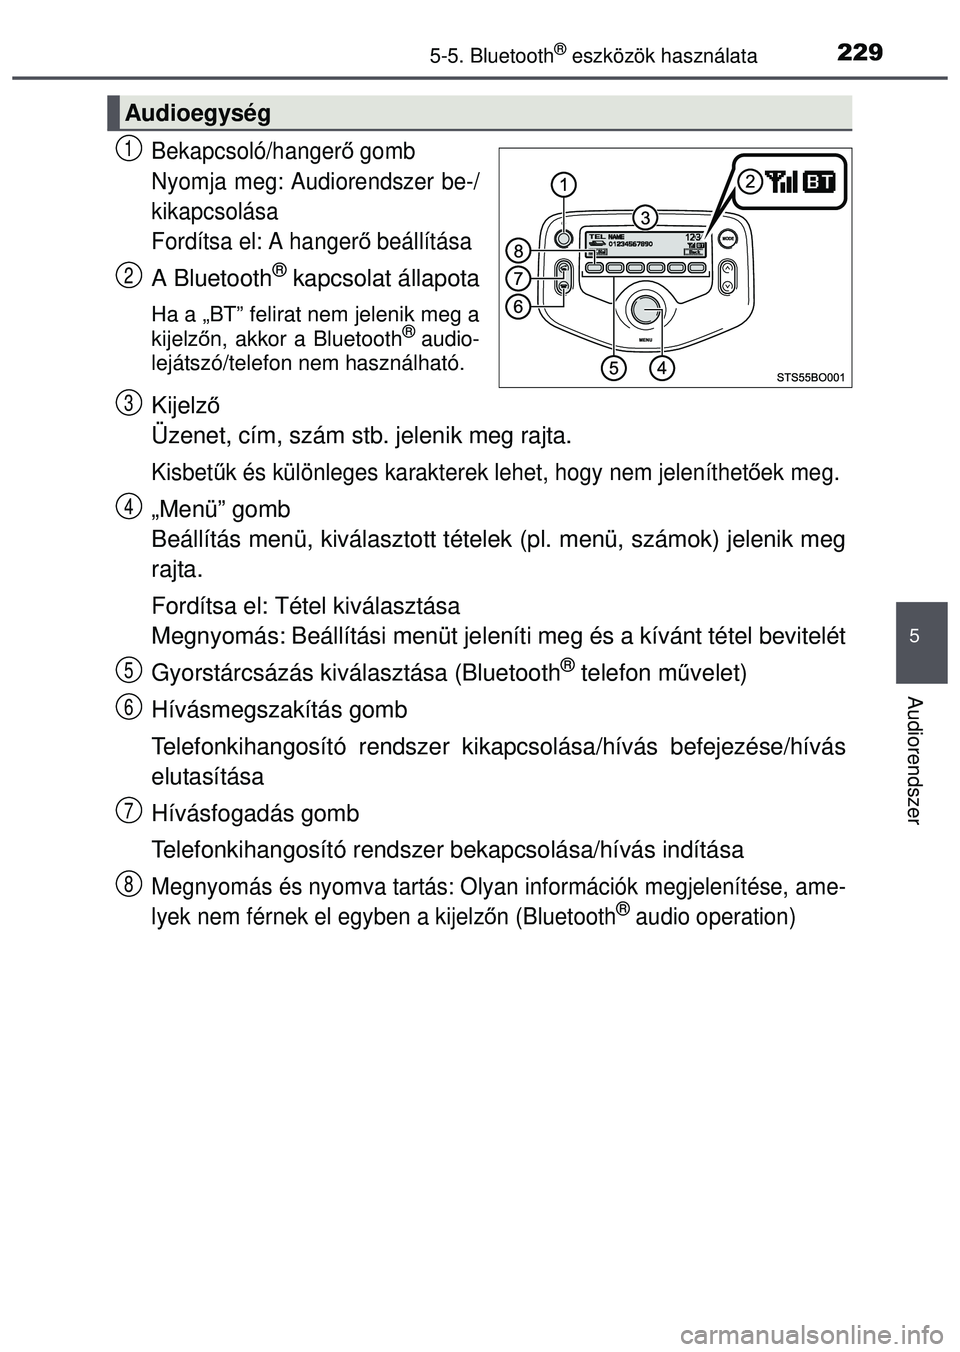 TOYOTA AYGO 2015  Kezelési útmutató (in Hungarian) 2295-5. Bluetooth® eszközök használata
5
Audiorendszer
Bekapcsoló/hangerő gomb
Nyomja meg: Audiorendszer be-/
kikapcsolása
Fordítsa el: A hanger ő beállítása
A Bluetooth® kapcsolat állap